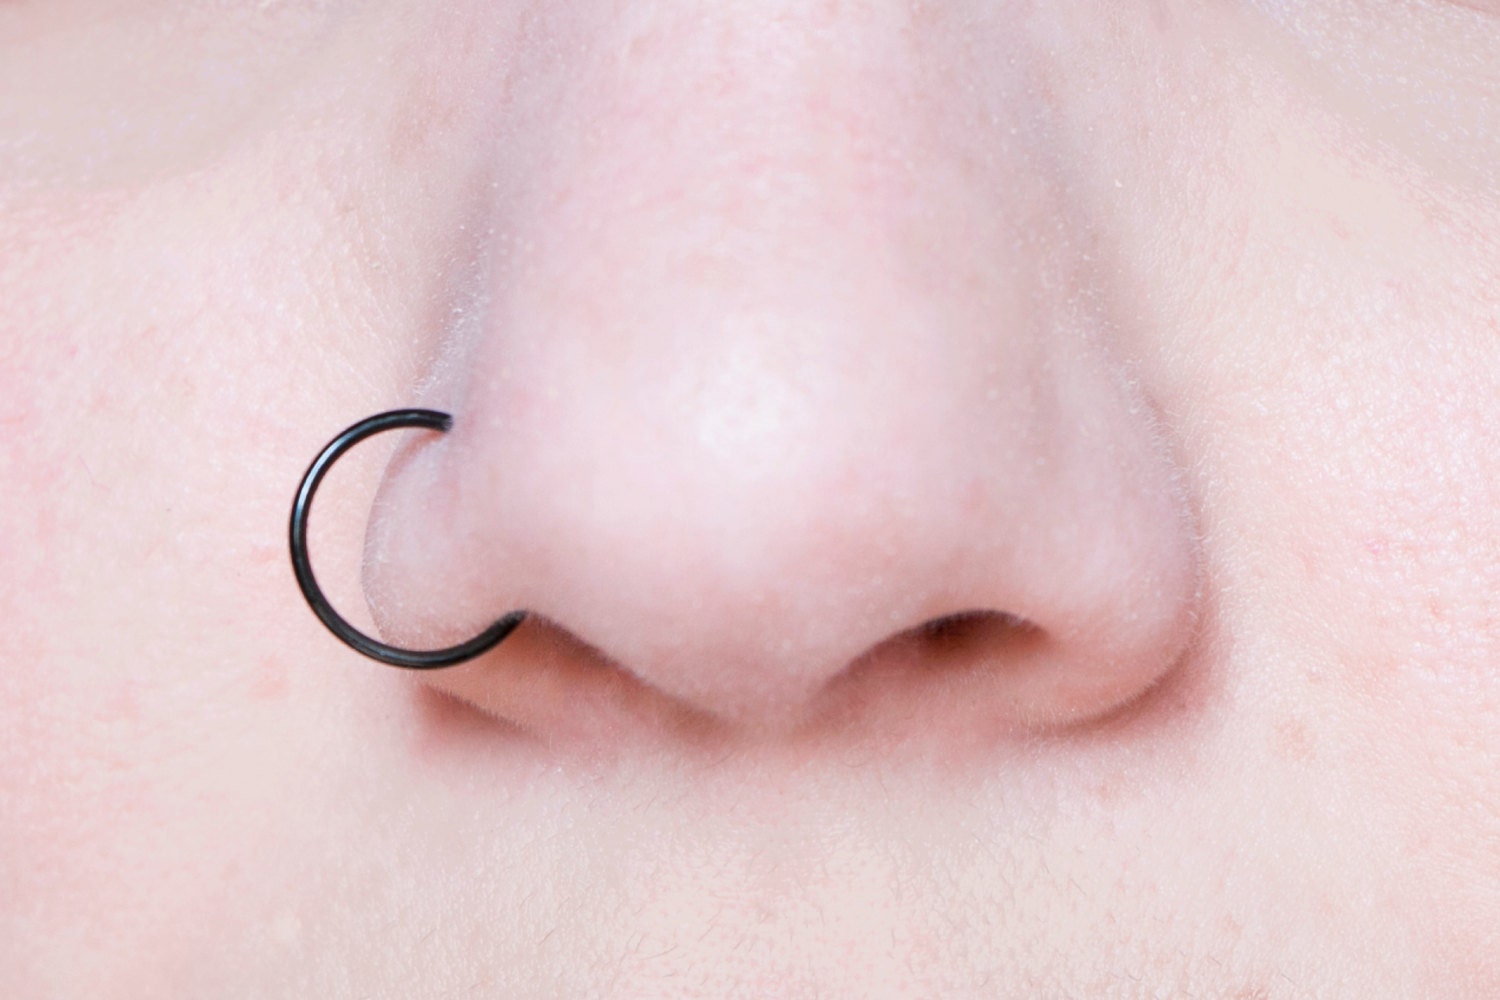 Extra Large Hoop Fake Nose Ring 20 Gauge Black Nose Cuff